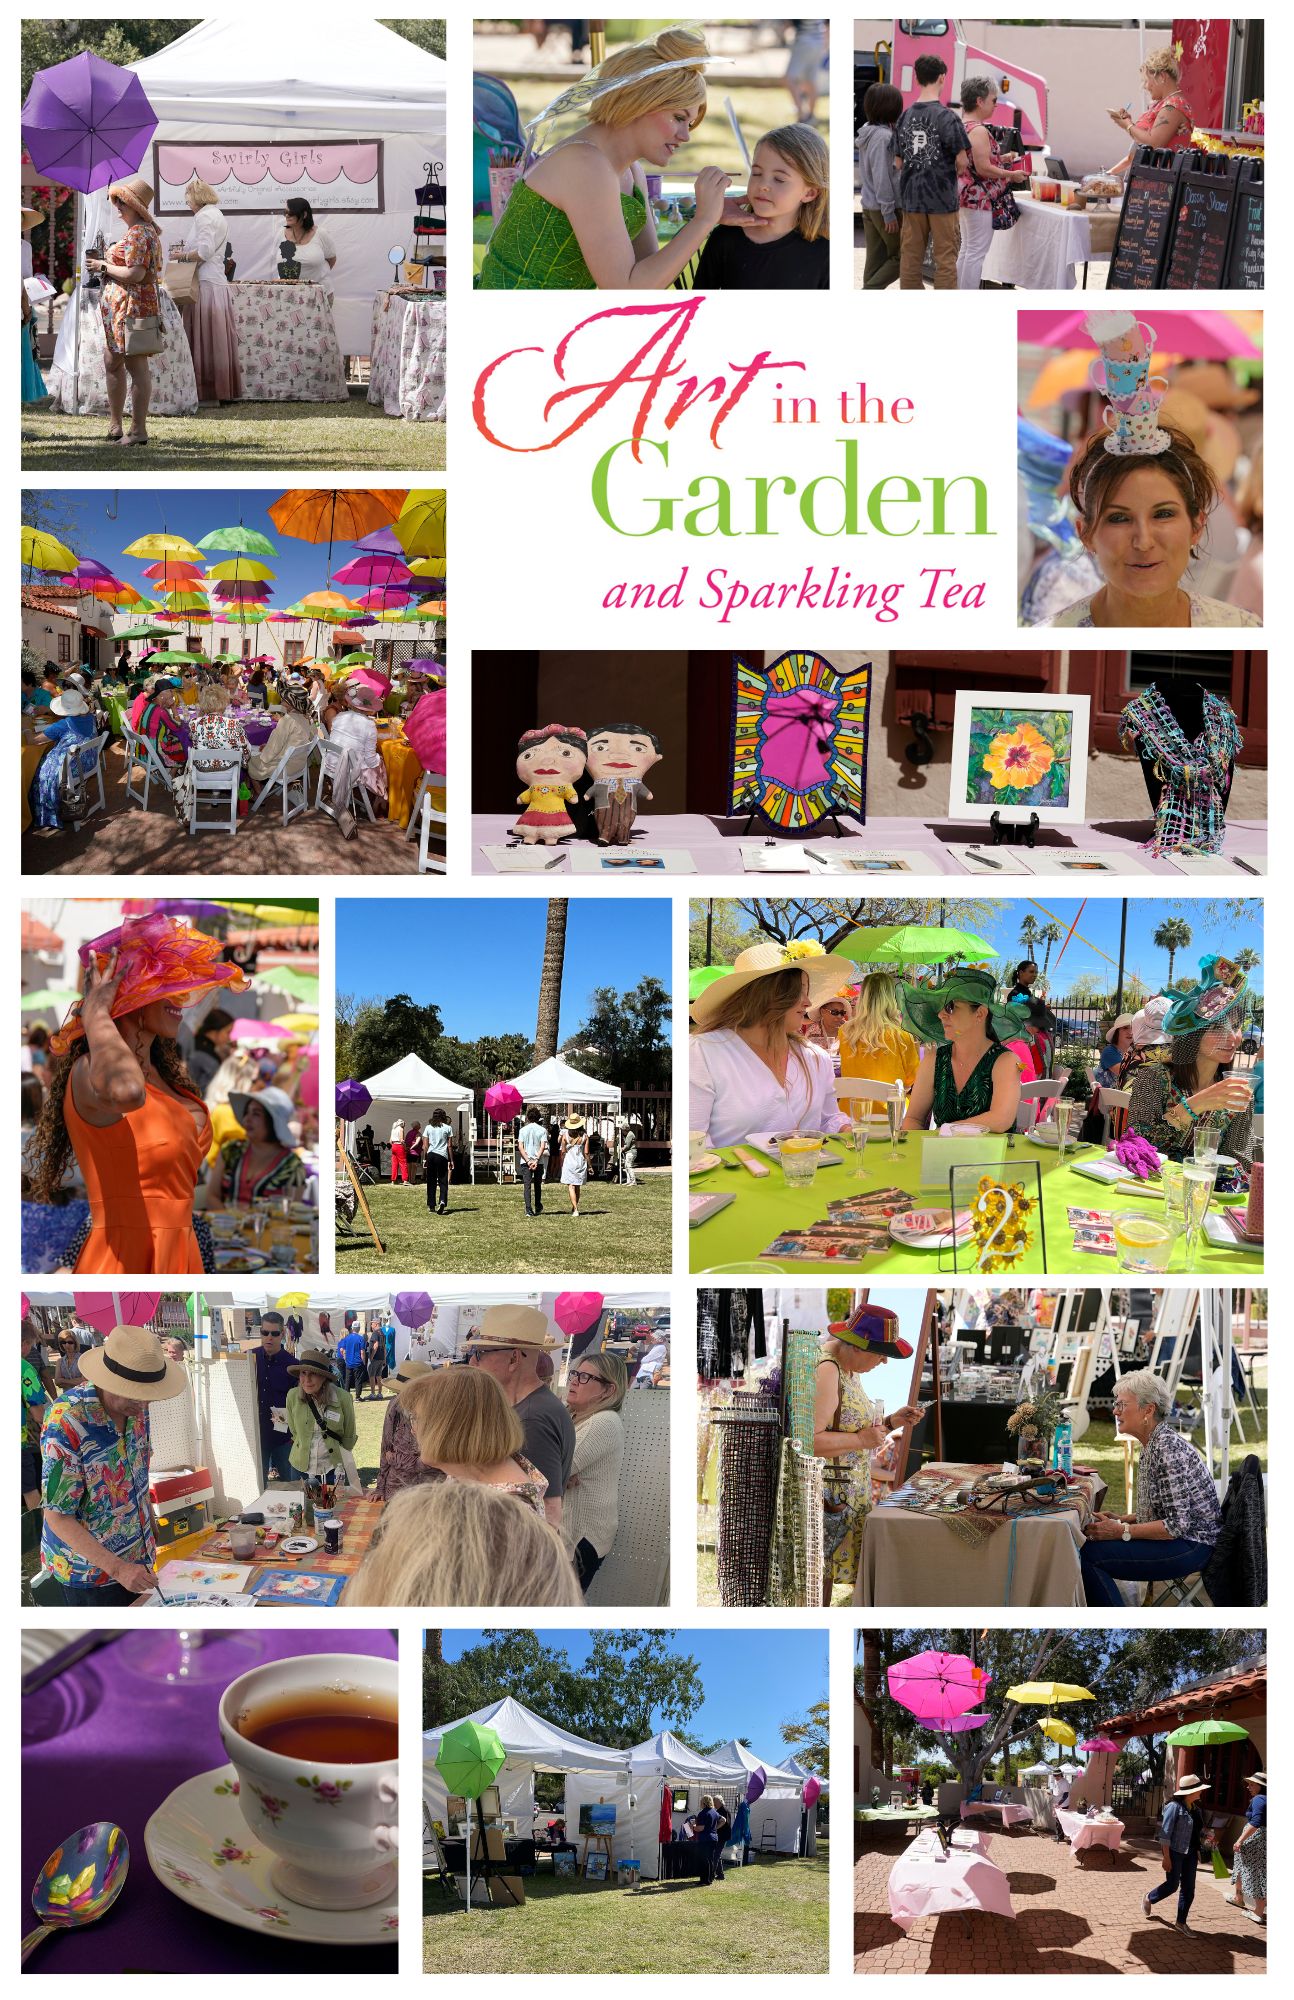 Photos of the Shemer Art Center Art in the Garden and Sparkling Tea spring event